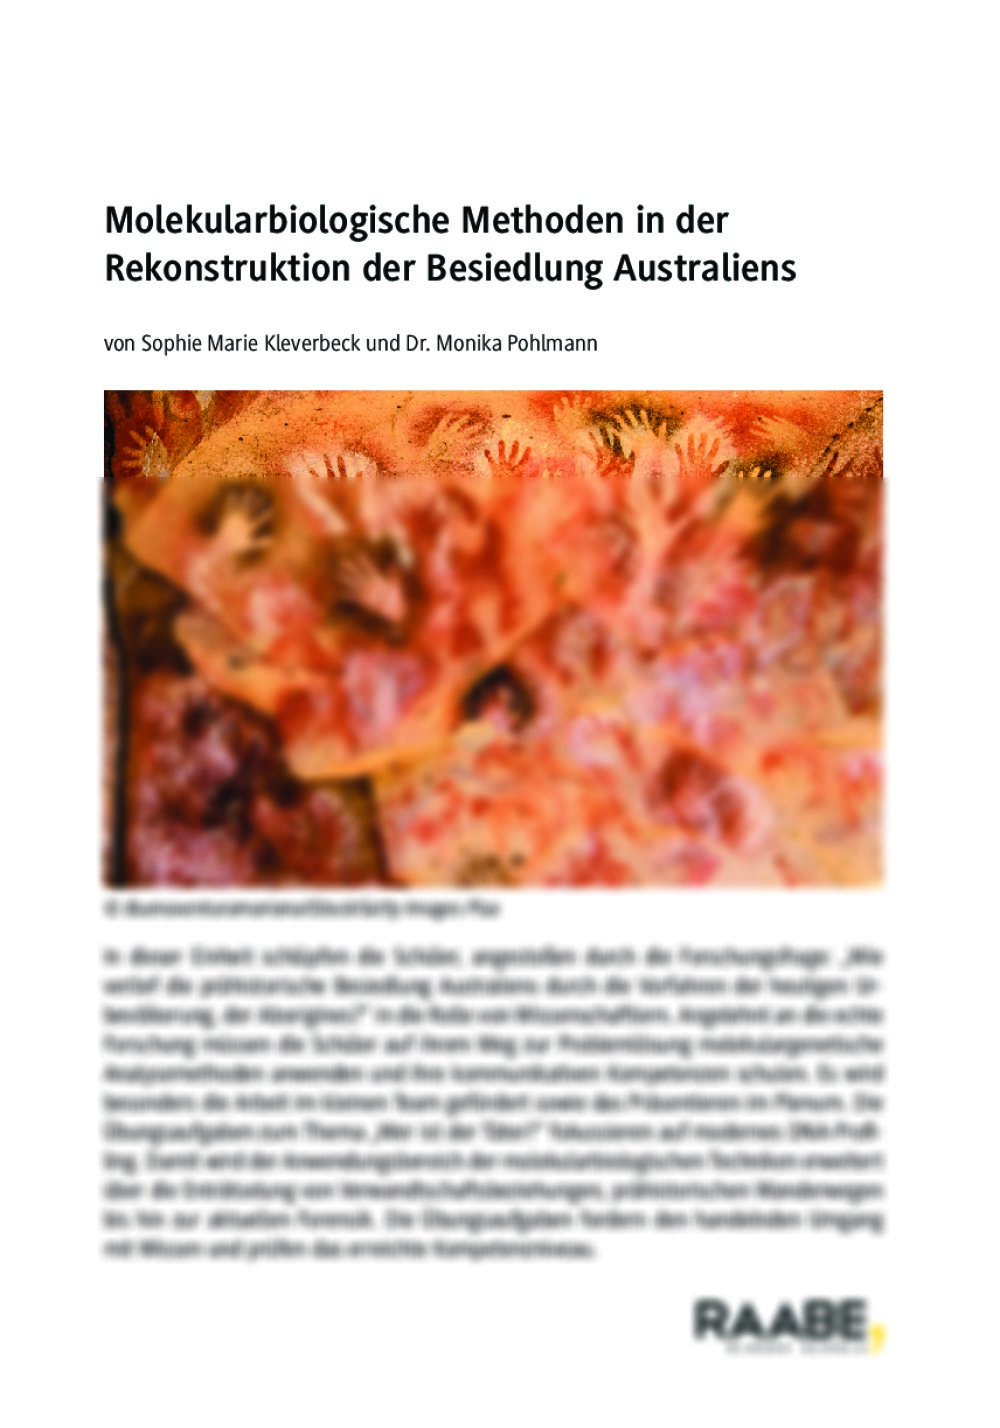 Molekularbiologische Methoden in der Rekonstruktion der Besiedlung Australiens - Seite 1